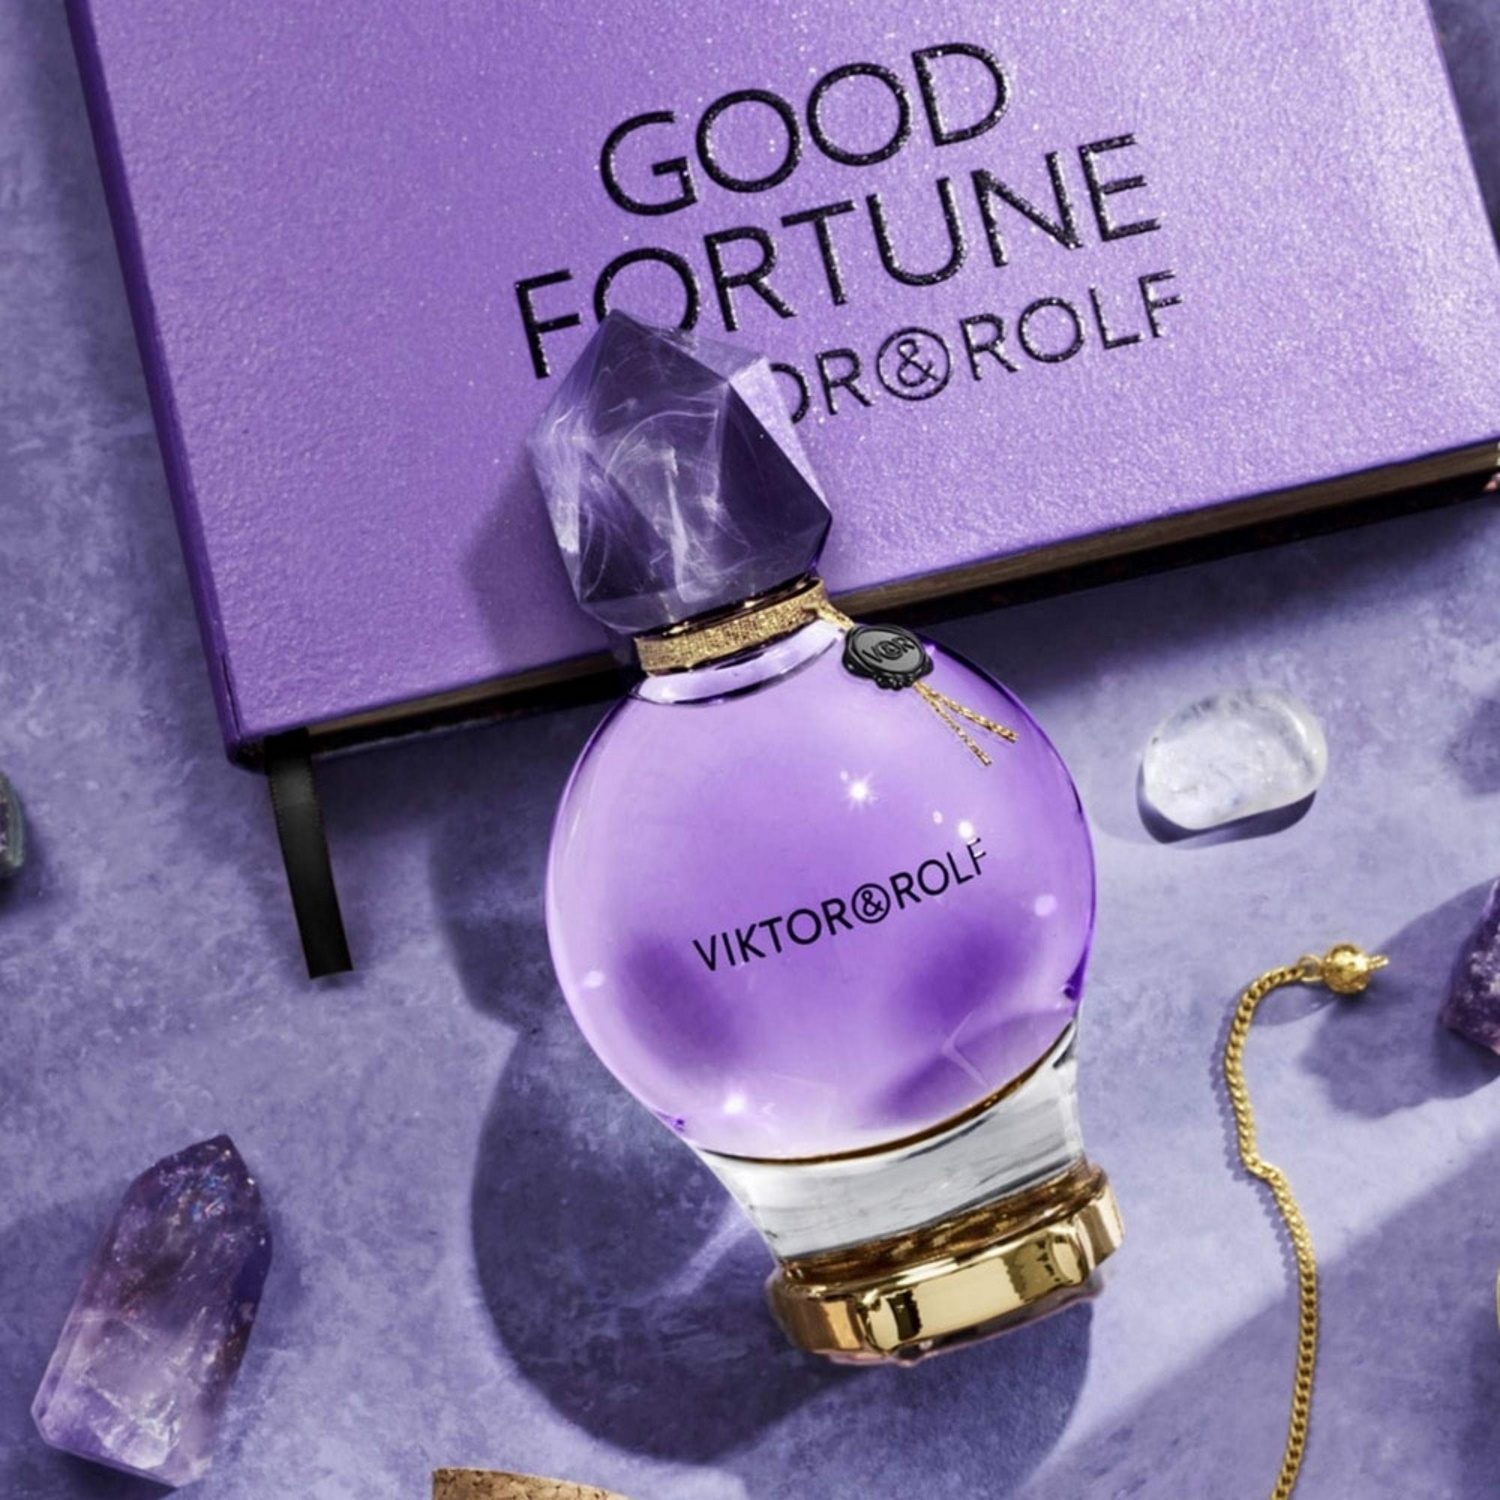 Good Fortune le nouveau parfum spirituel de Viktor & Rolf